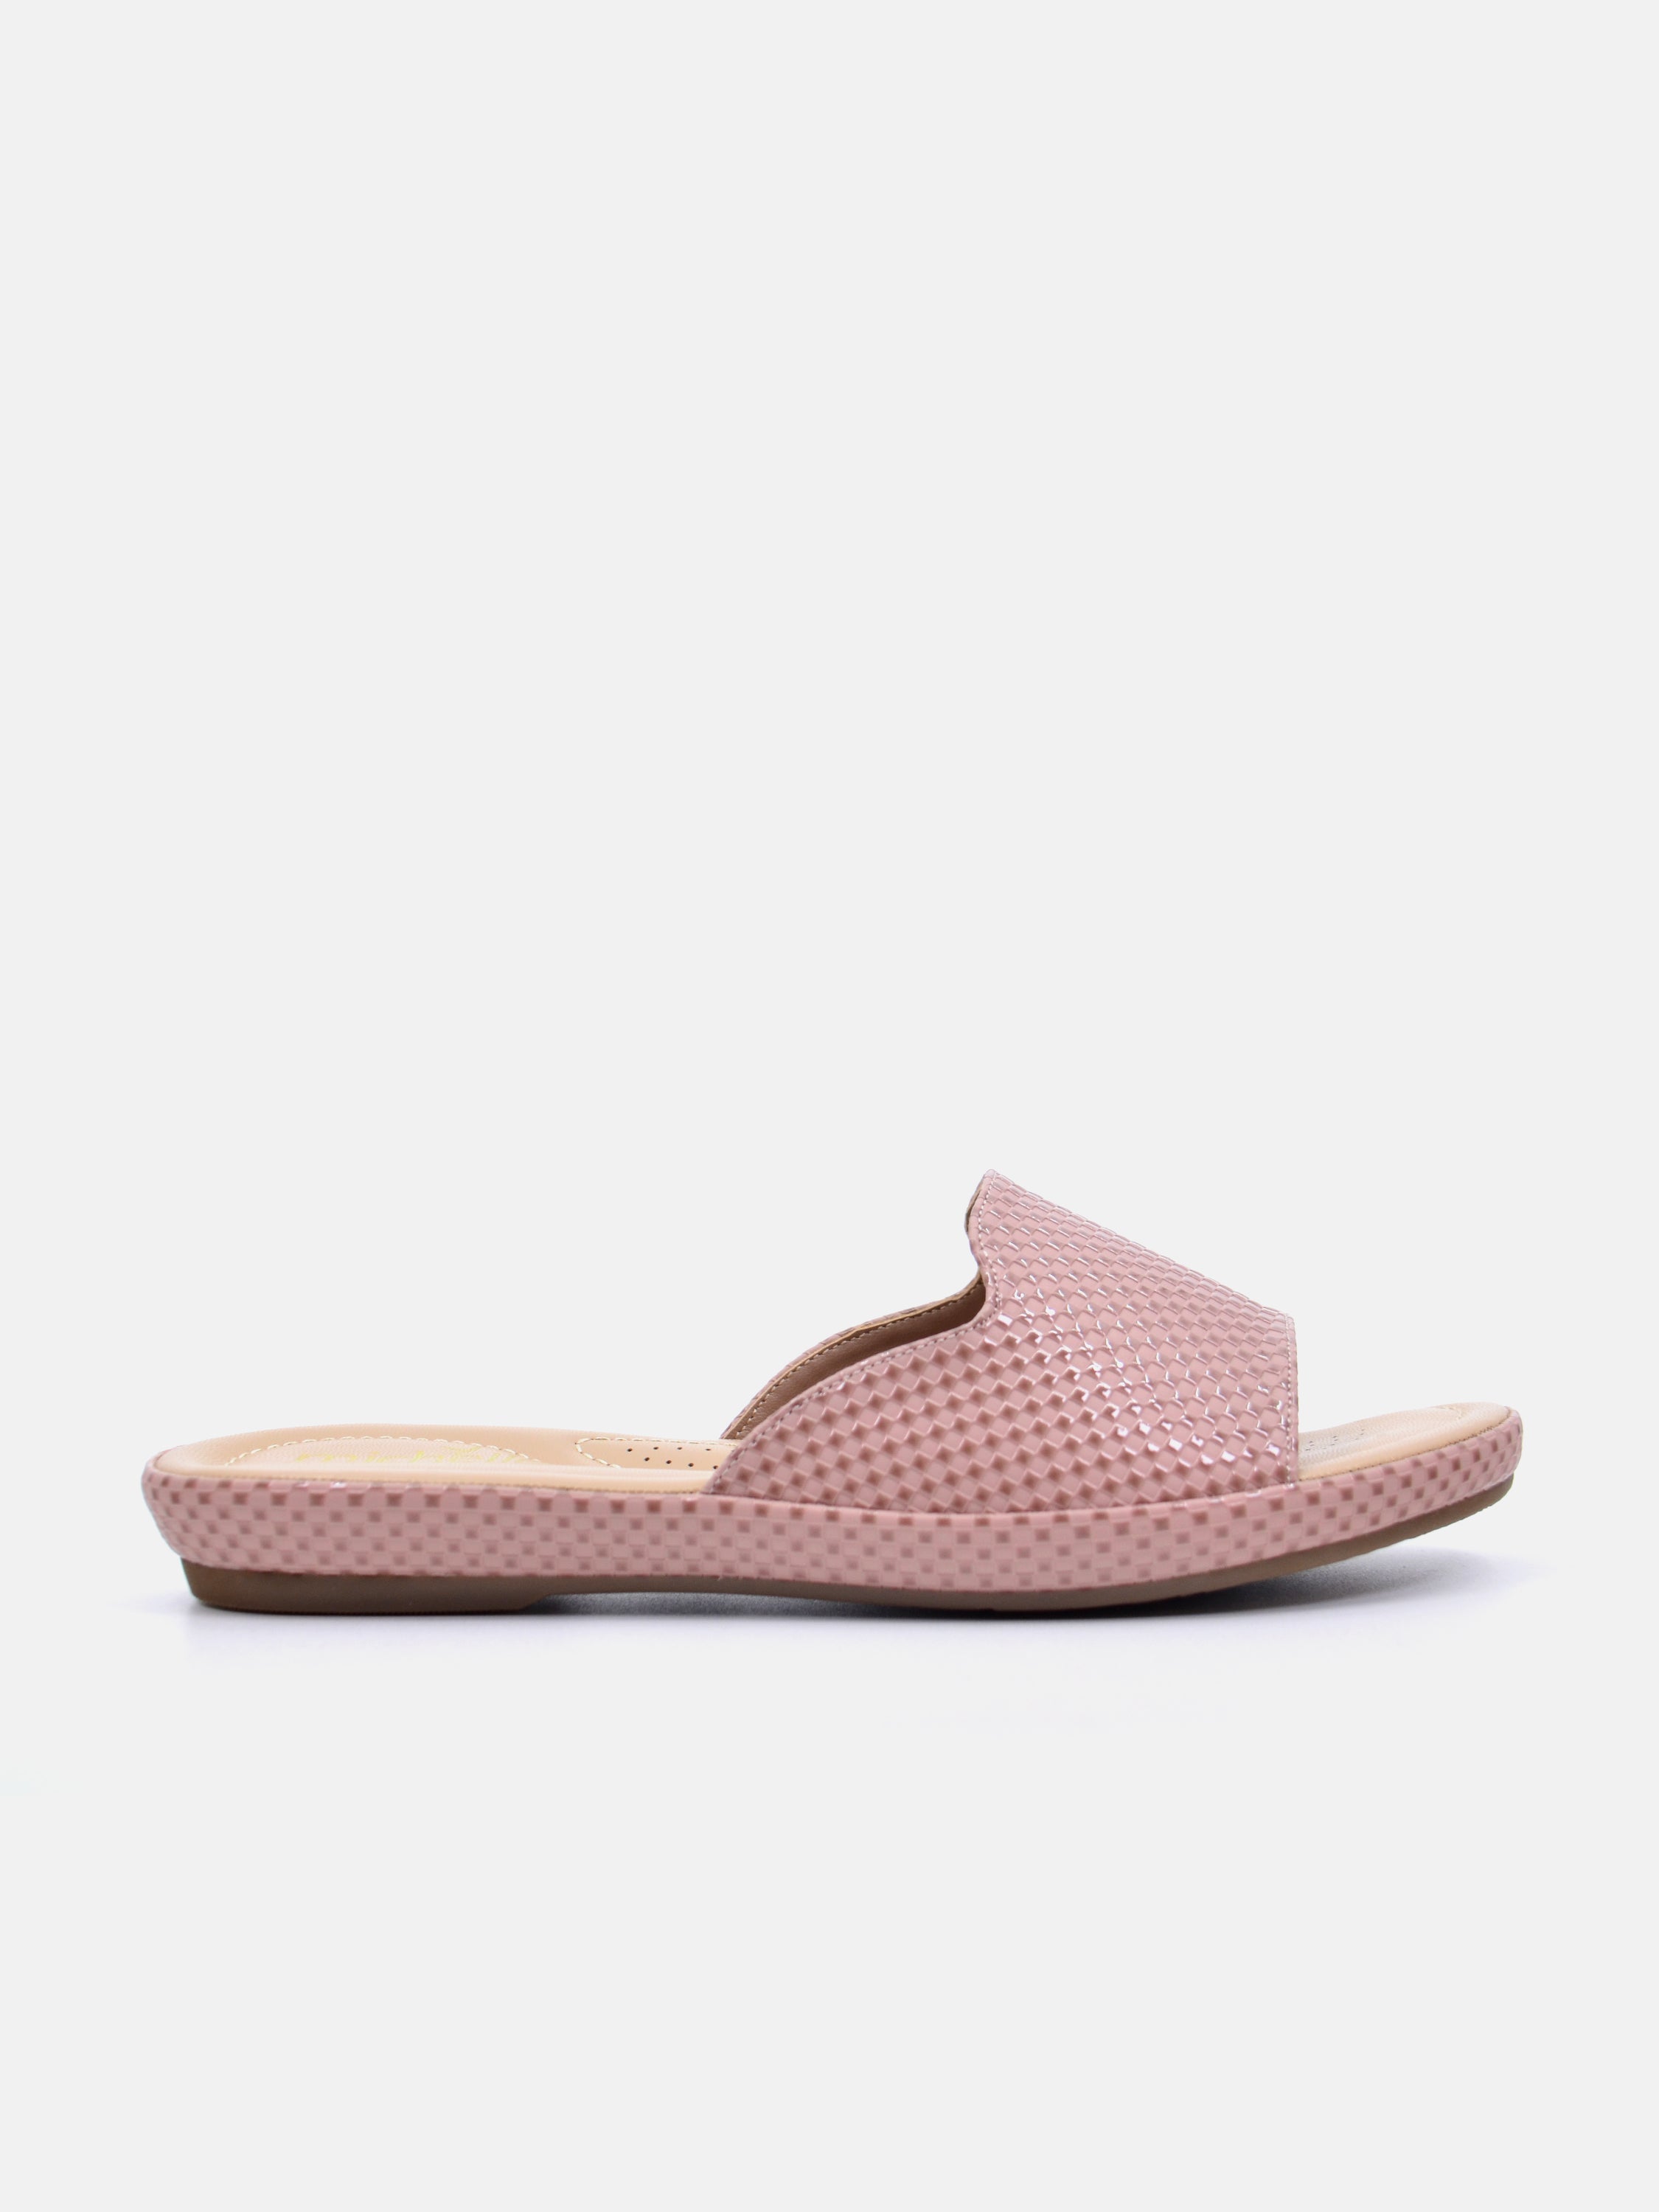 Michelle Morgan 114RC671 Women's Flat Sandals #color_Beige